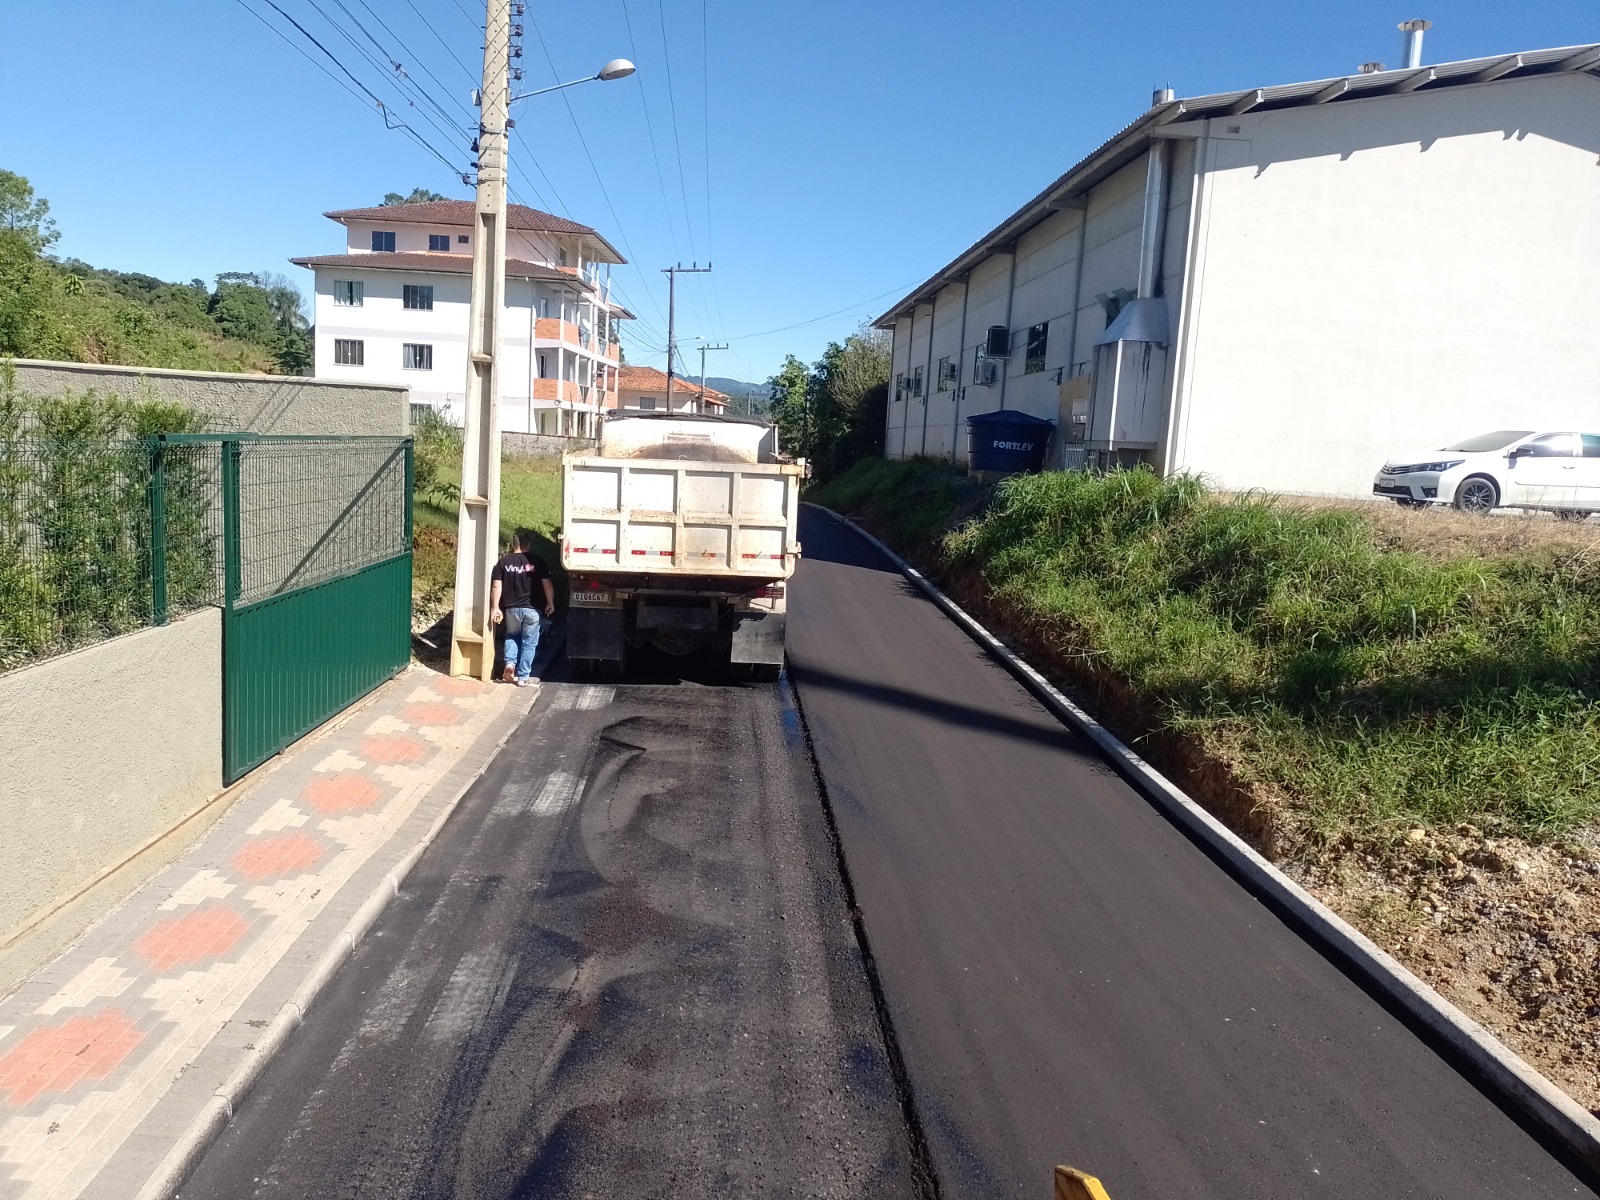 Concluída a pavimentação asfáltica na rua DJ-31, no bairro Dom Joaquim